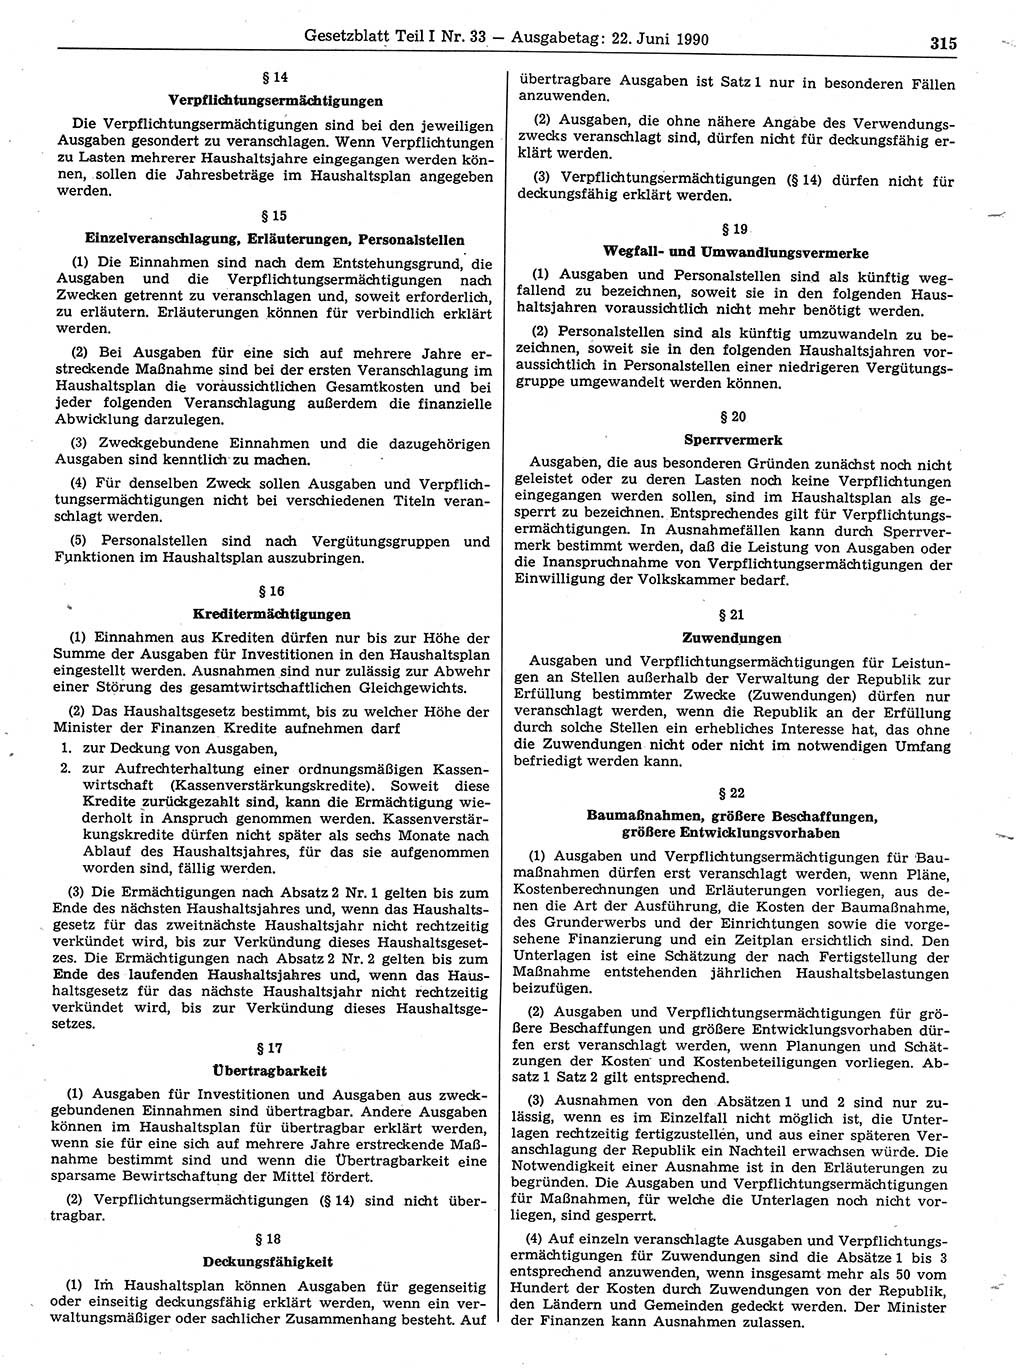 Gesetzblatt (GBl.) der Deutschen Demokratischen Republik (DDR) Teil Ⅰ 1990, Seite 315 (GBl. DDR Ⅰ 1990, S. 315)